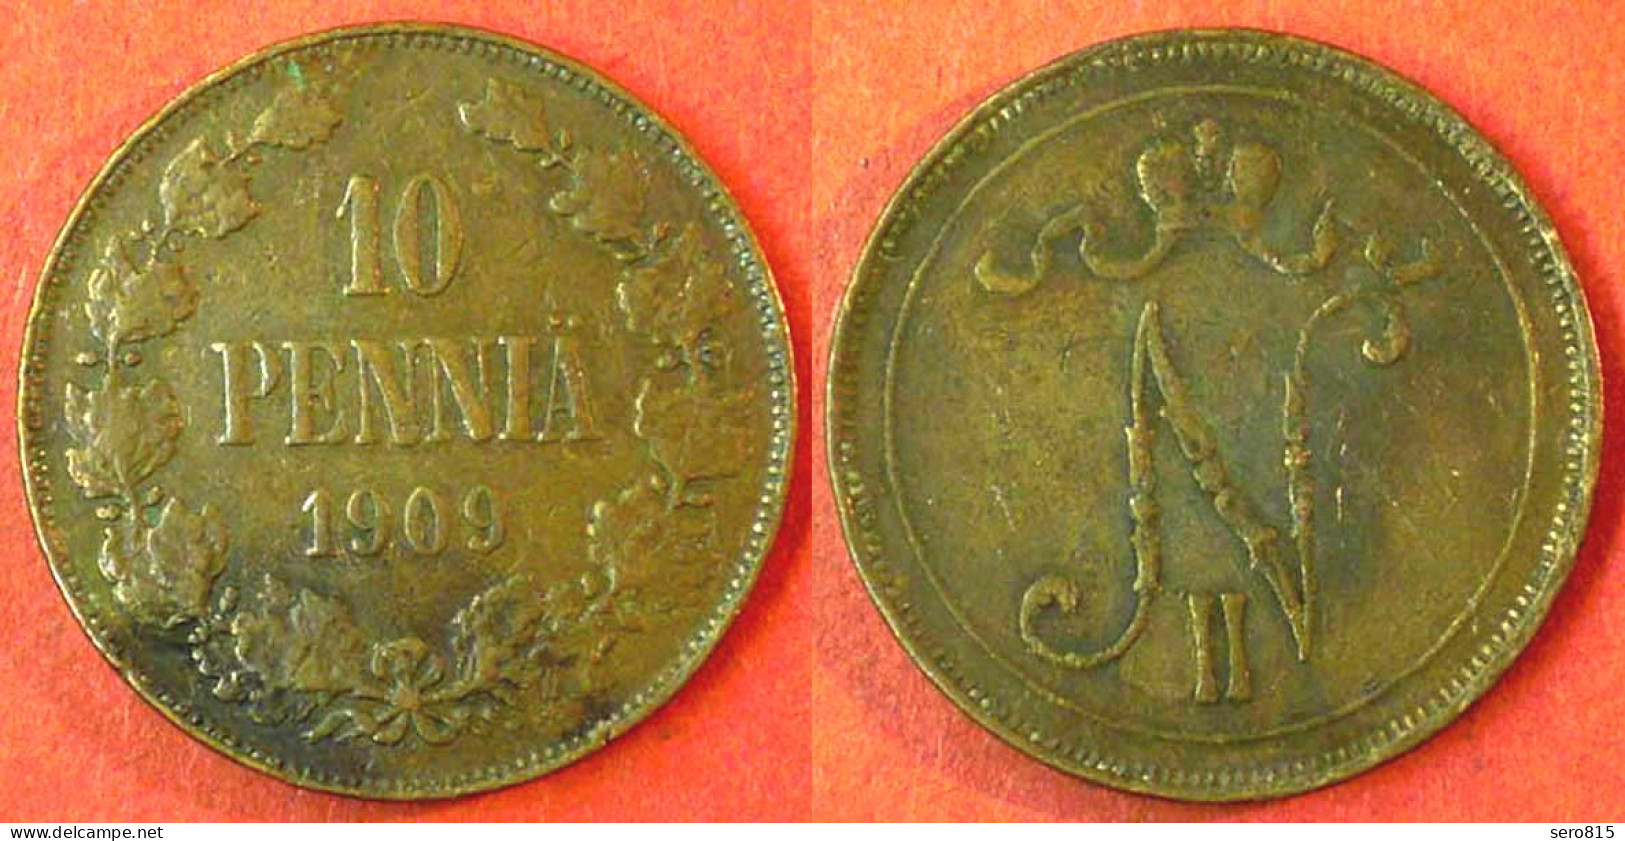 Finland - Finnland 10 Penniä 1908 Nikolaus II.1894-1917   (3849 - Finland